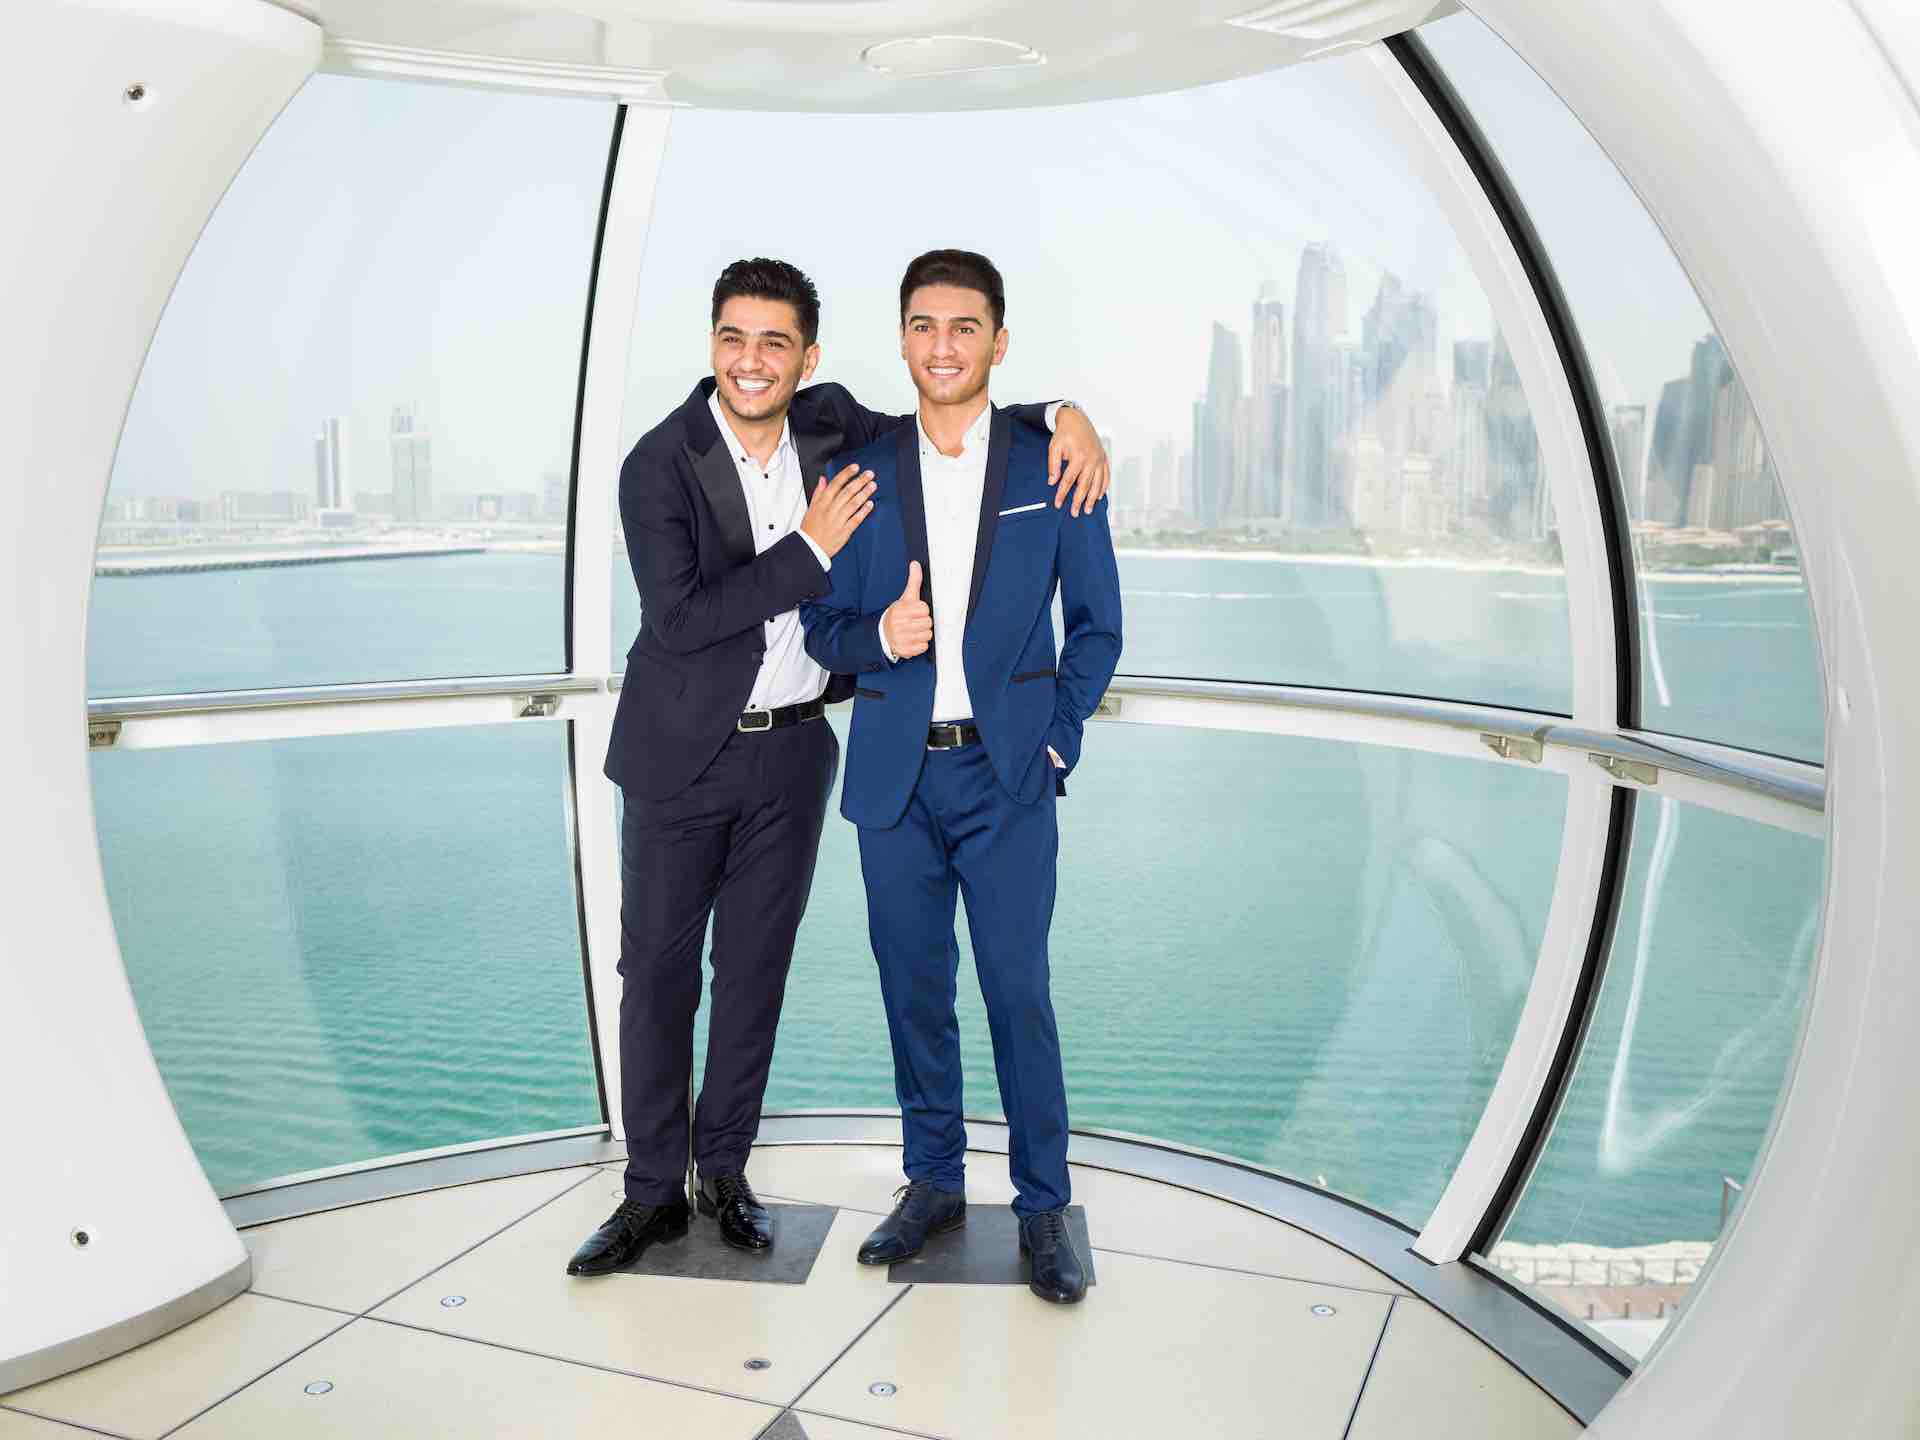 Det blev muligt at realisere de dyreste drømme; Arabisk elskede "Mohamed Assaf" popstjerne slutter sig til Madame Tussauds Dubais berømthedsliste